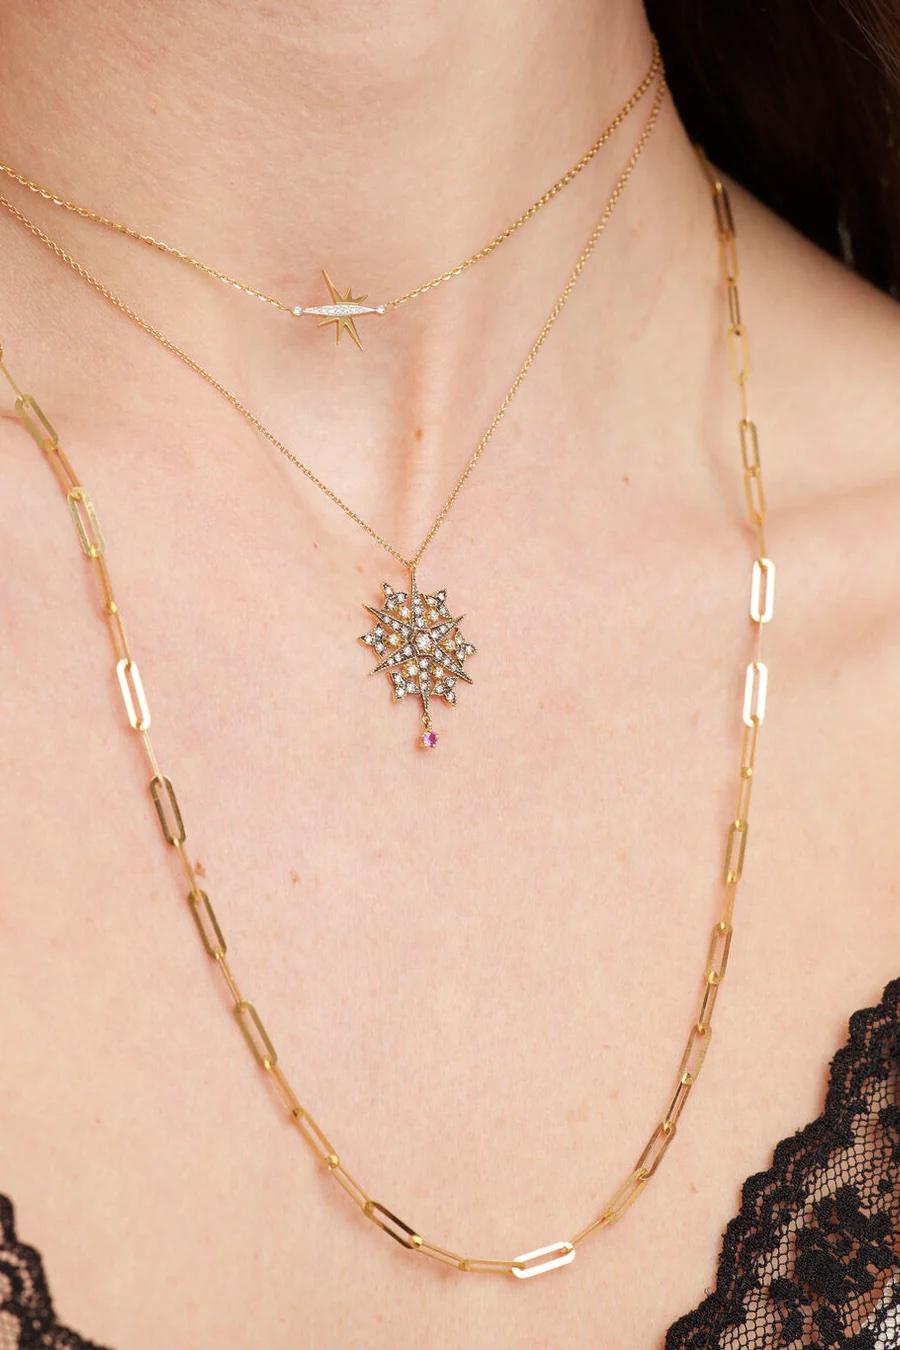 Erleben Sie die Magie des Wunsches nach einer Sternschnuppe mit dieser exquisiten Halskette! Dieses atemberaubende Schmuckstück aus 18 Karat Gelbgold mit einem leuchtenden Rubin und funkelnden weißen Diamanten ist die perfekte Wahl für jeden